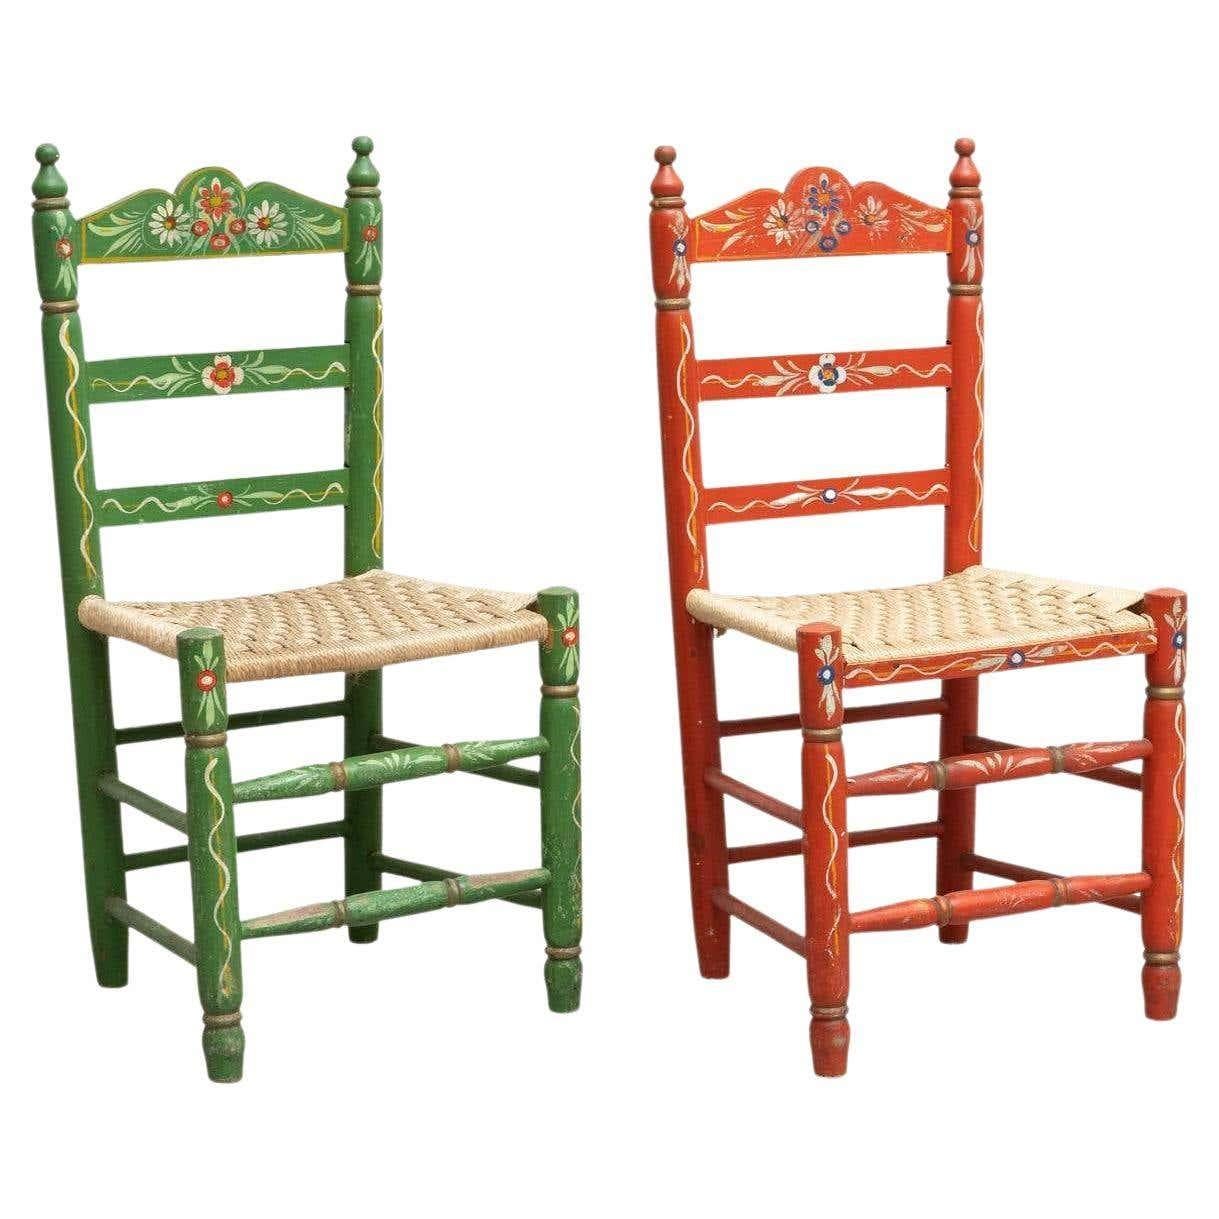 Set aus zwei rustikalen handgefertigten und handbemalten Holzstühlen.

Von einem unbekannten Kunsthandwerker in Spanien, um 1940.

In gutem Originalzustand mit geringen alters- und gebrauchsbedingten Abnutzungserscheinungen, die eine schöne